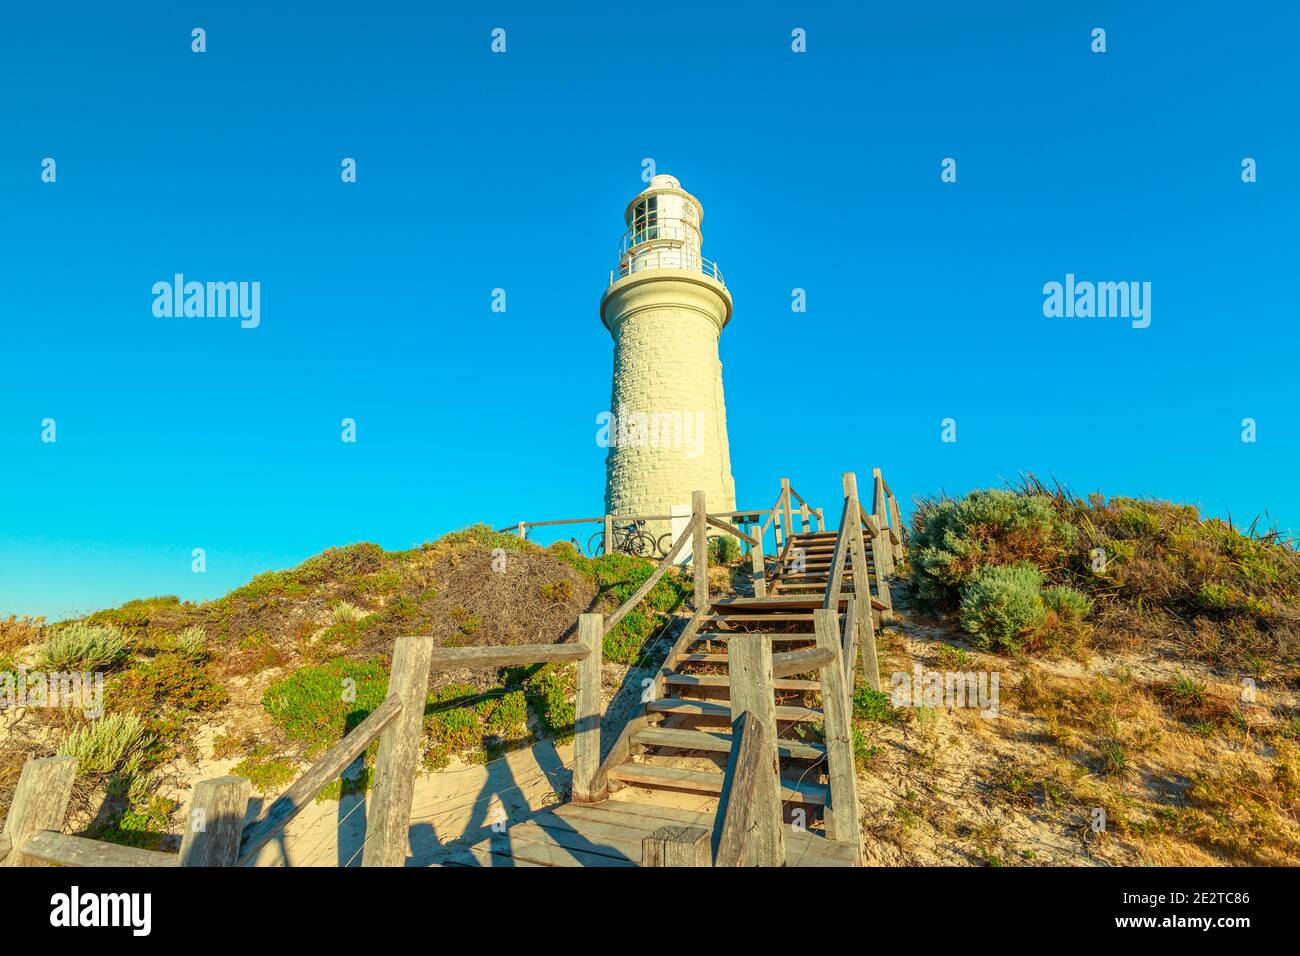 Escaliers menant au phare de Bathurst, sur la côte nord de l'île Rottnest, près de Perth, en Australie occidentale. Après-midi ensoleillé avec ciel bleu. Banque D'Images